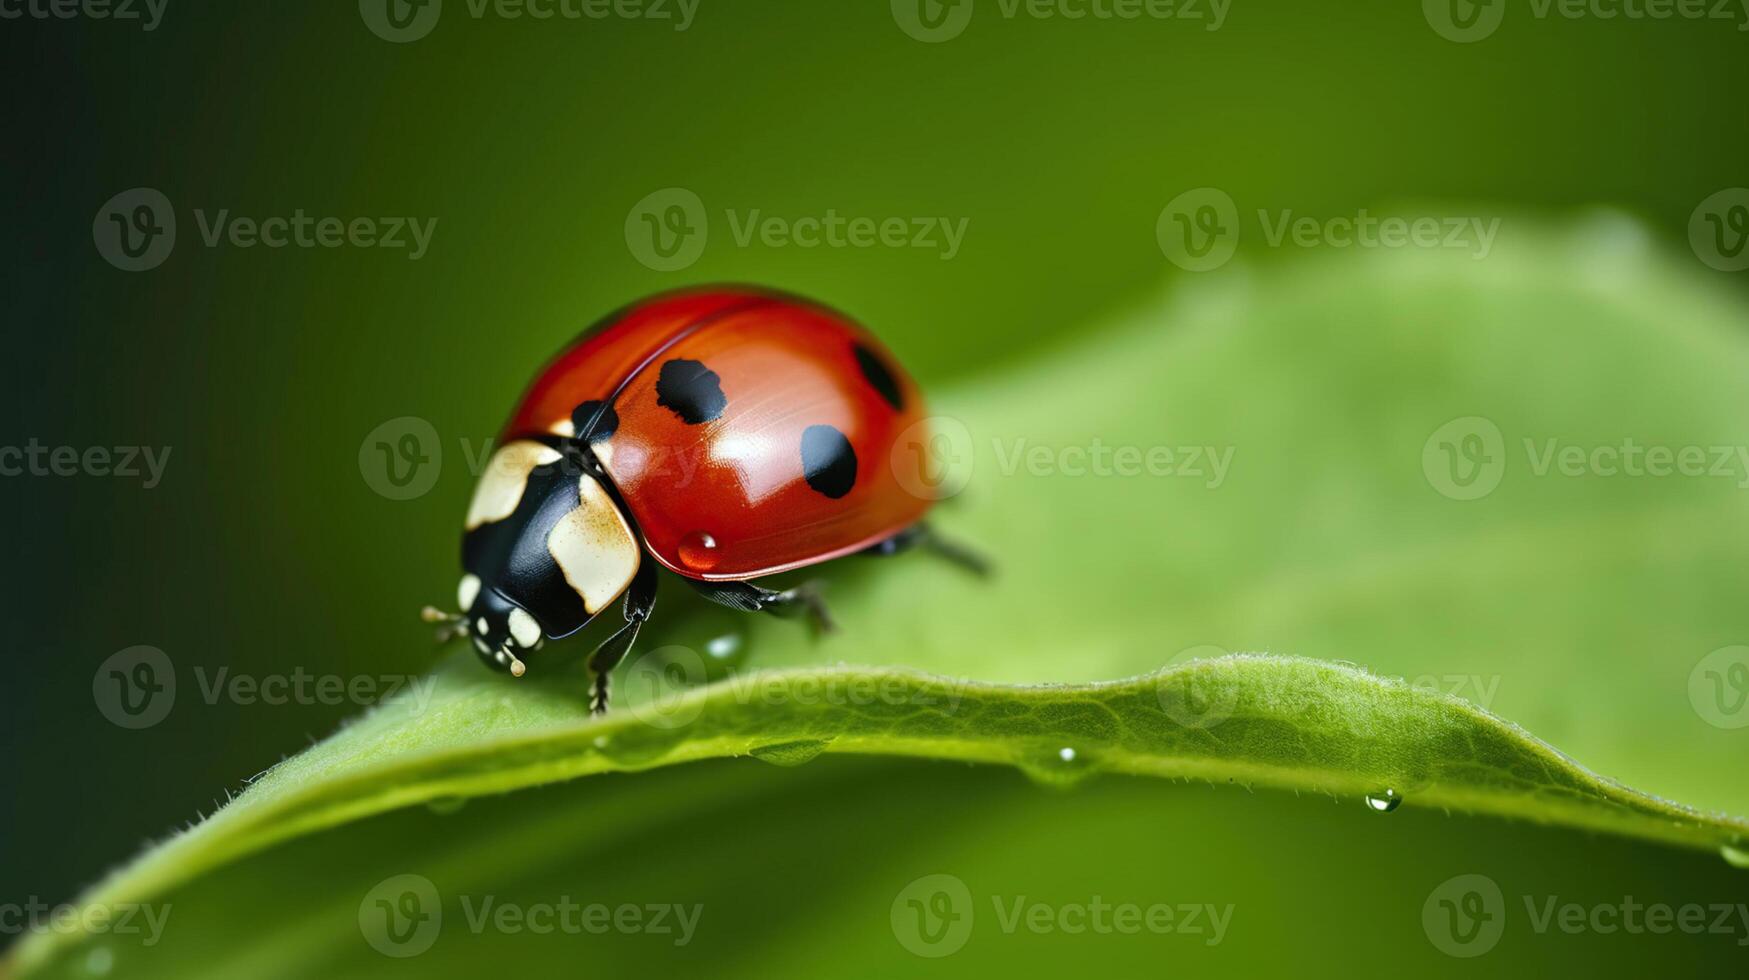 Ladybug on grass, photo